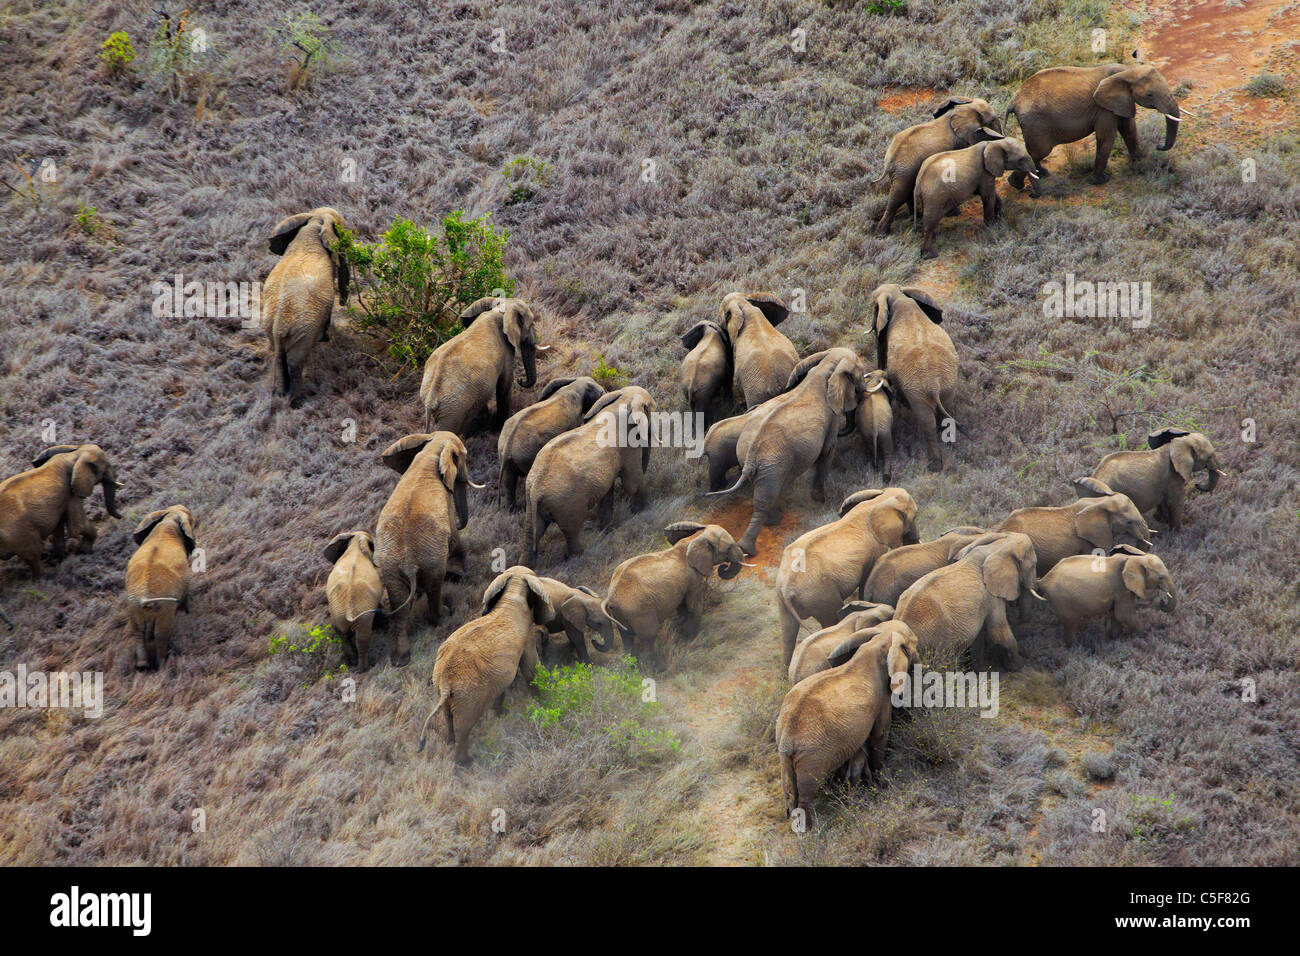 Vista aérea del elefante africano (Loxodonta africana) en Kenia. Foto de stock